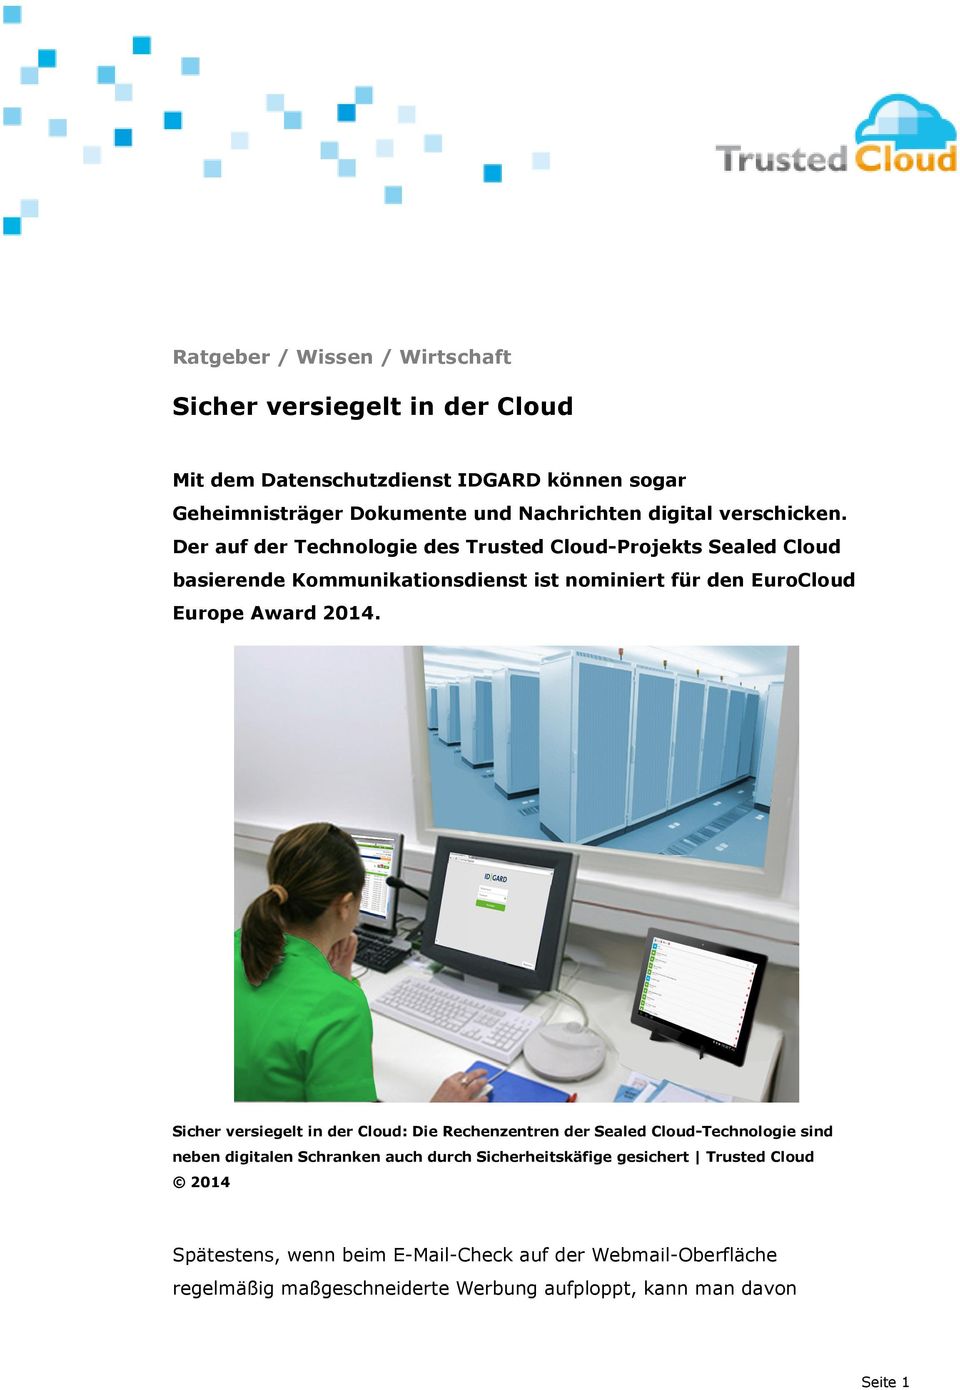 Der auf der Technologie des Trusted Cloud-Projekts Sealed Cloud basierende Kommunikationsdienst ist nominiert für den EuroCloud Europe Award 2014.